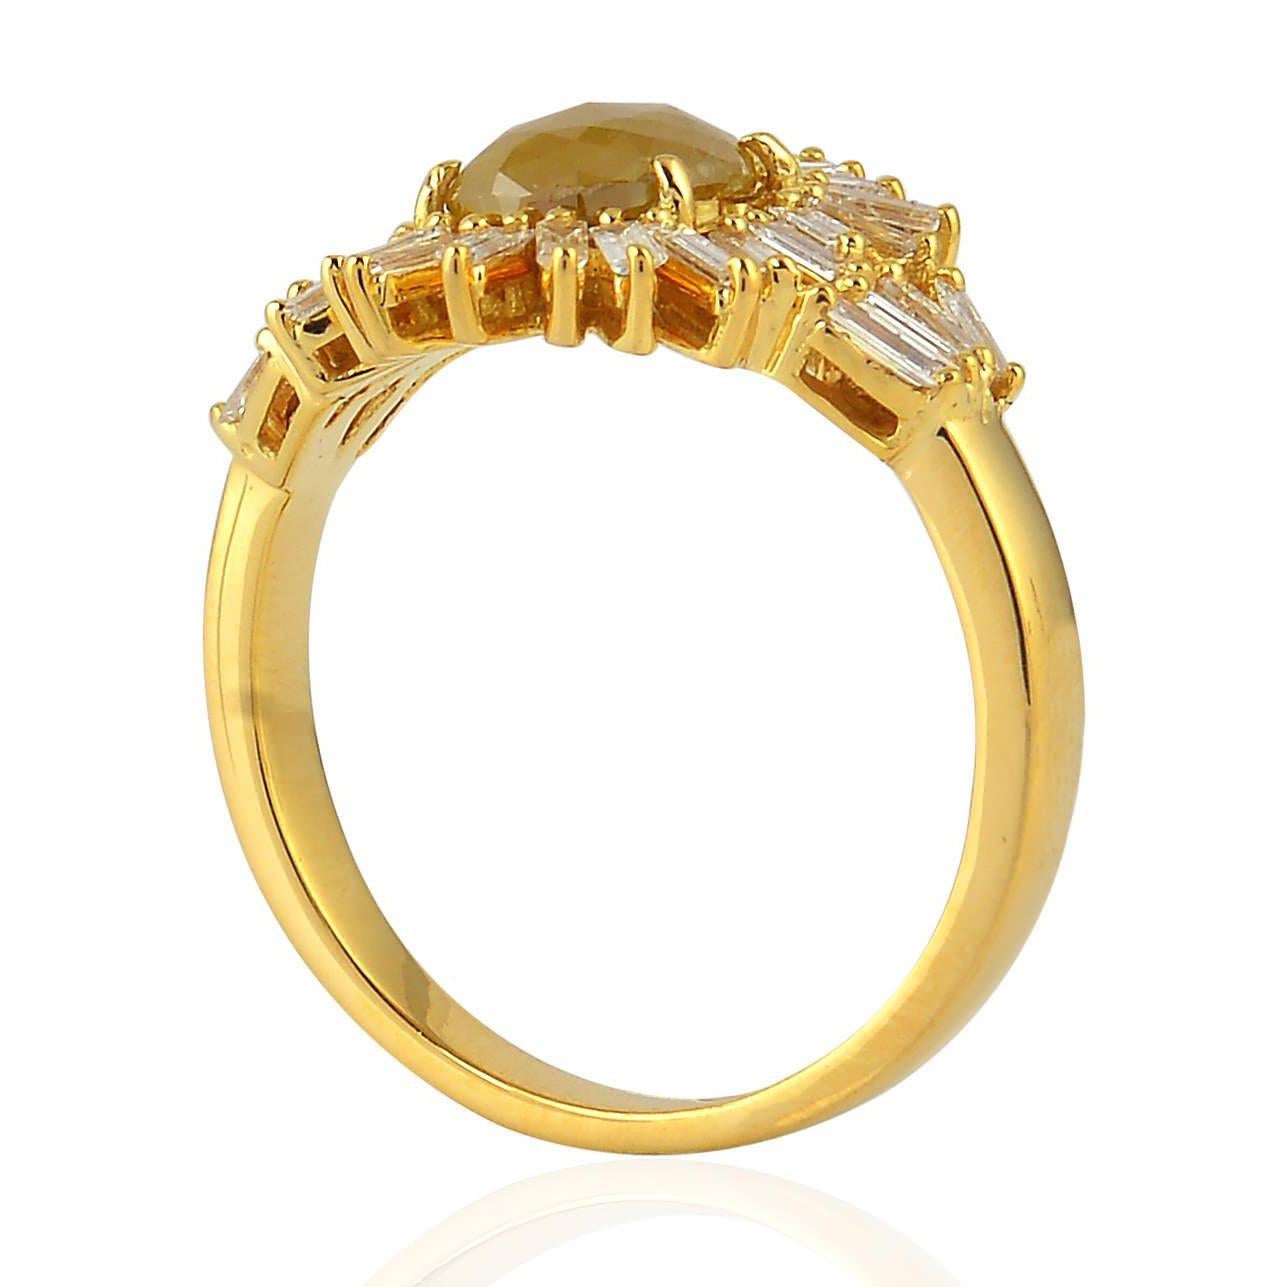 Dieser Ring ist aus 18-karätigem Gold handgefertigt. Er ist mit einem natürlichen Diamanten in Scheibenform und 1,93 Karat Baguette-Diamanten besetzt

Der Ring hat die Größe 7 und kann auf Anfrage größer oder kleiner gemacht werden. 
FOLGEN  MEGHNA